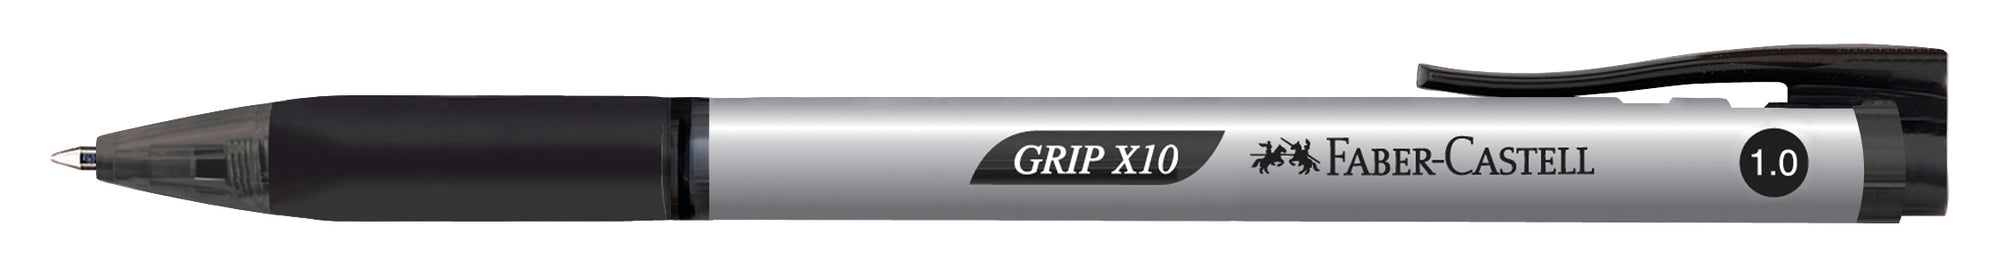 Grip X10 Ballpoint pen 1.0 mm